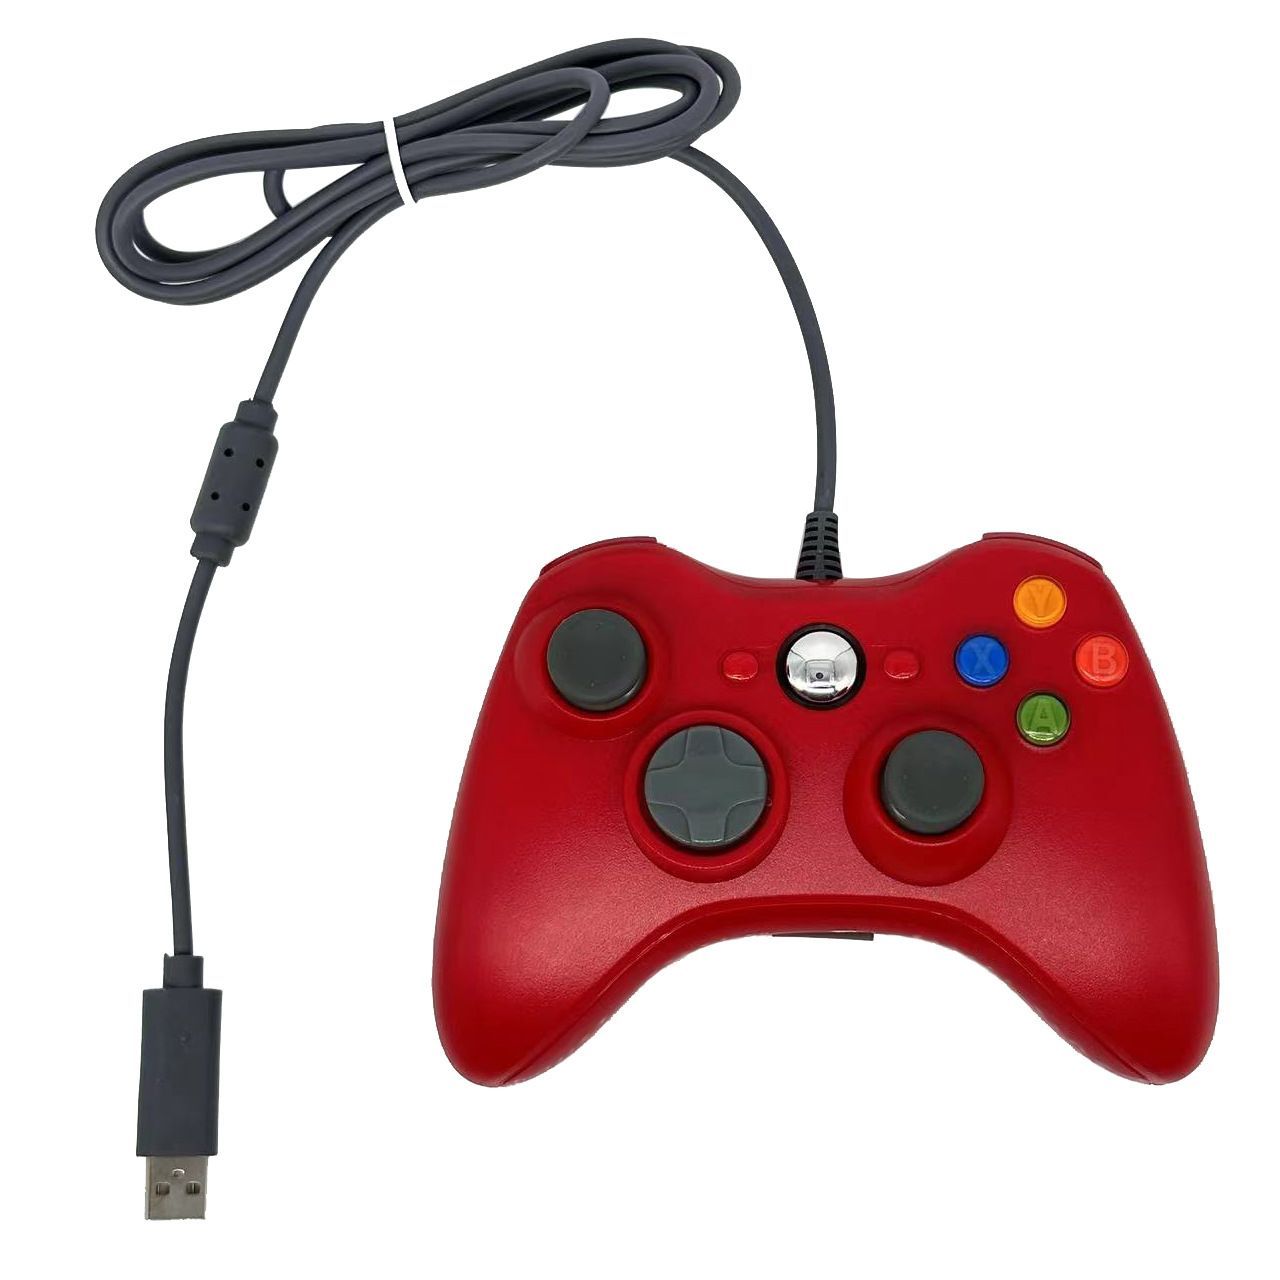 Геймпад характеристики. Геймпад для Xbox 360 проводной красный. Red Dragon джойстик. Lenovo с красным джойстиком.